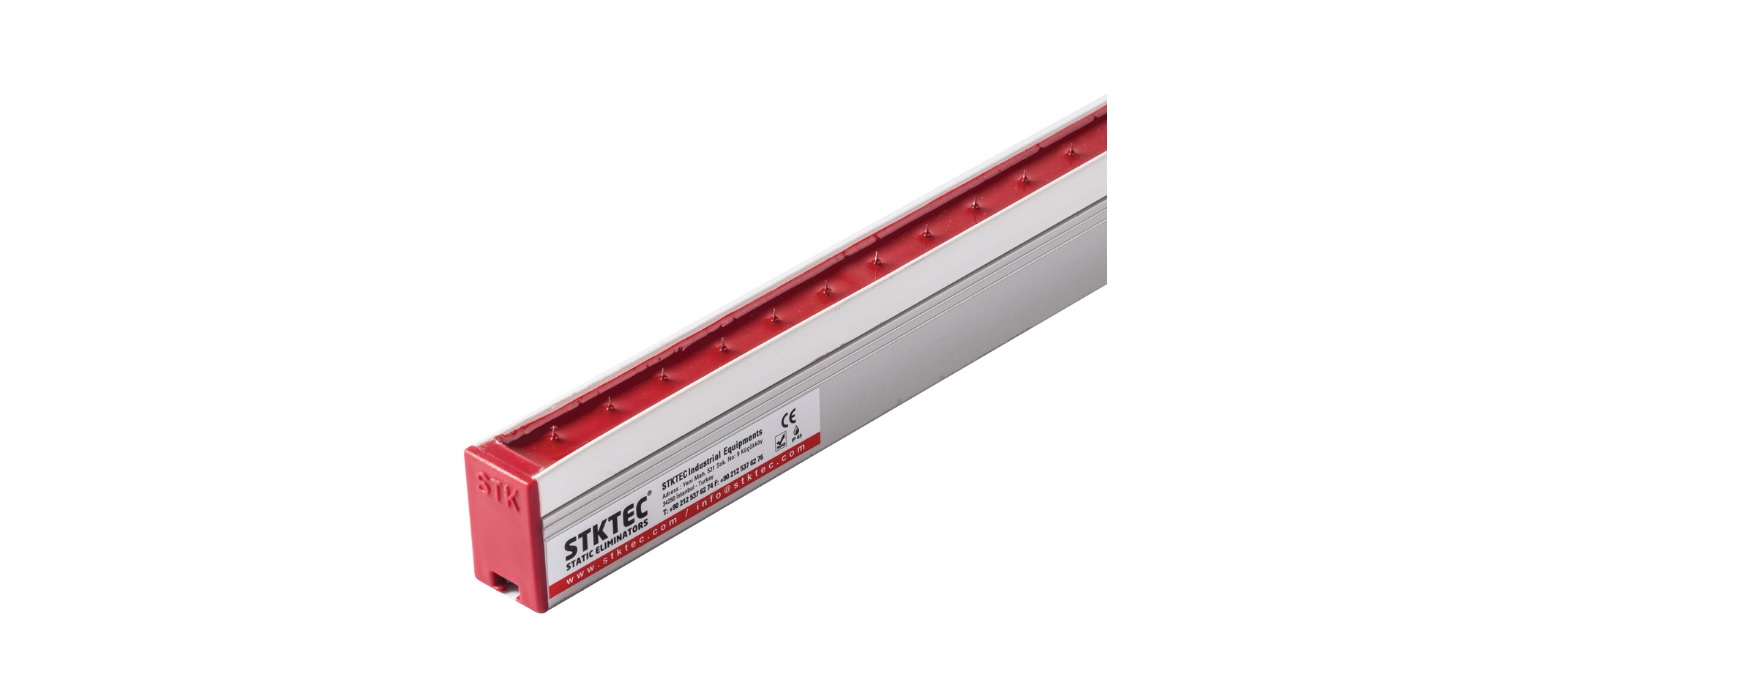 STK-80-AC Tip HP Antistatik Bar